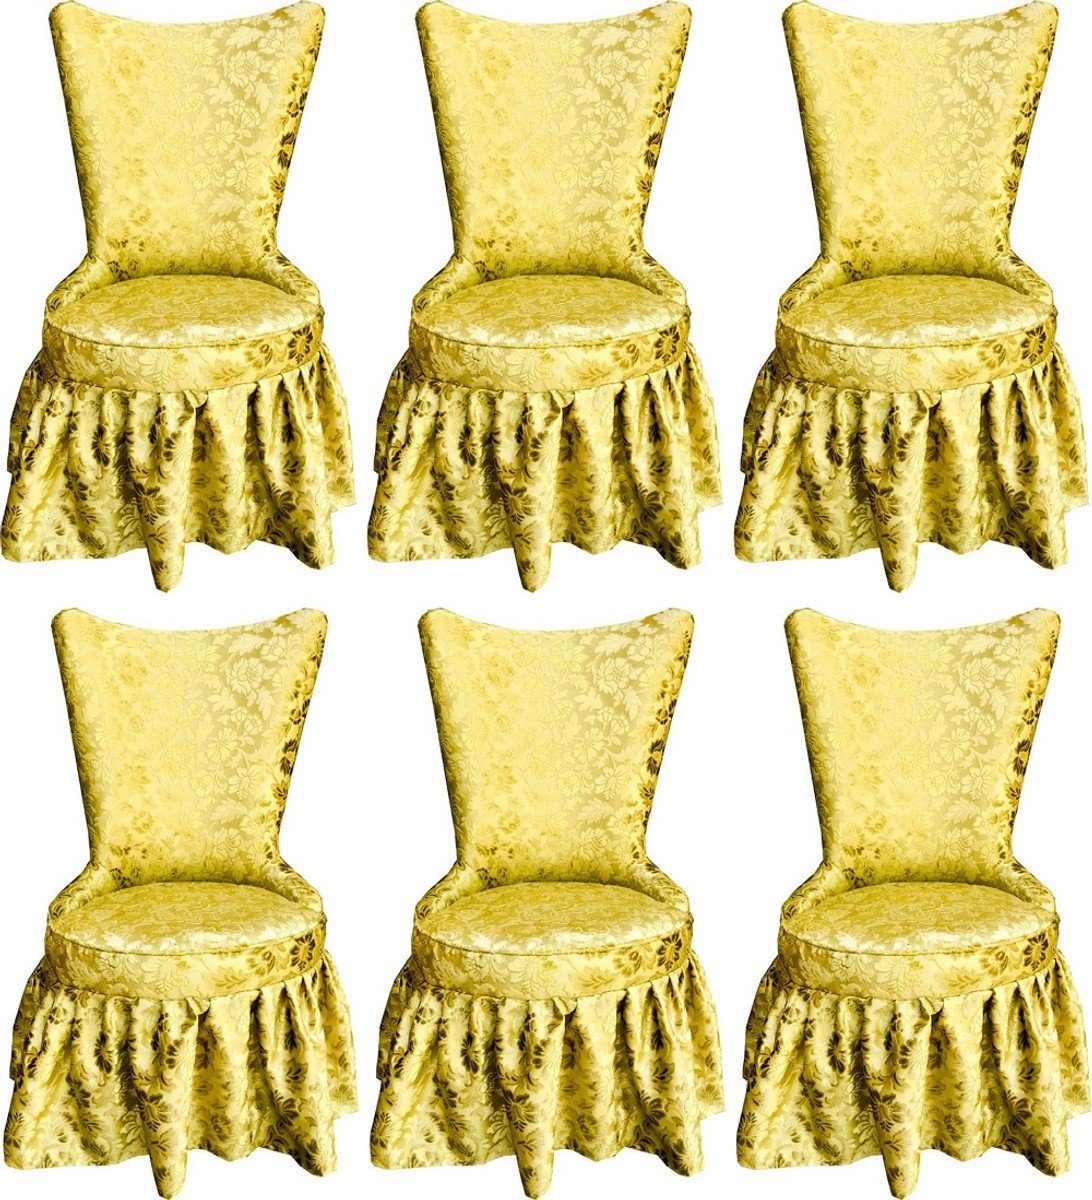 Casa Padrino Esszimmerstuhl Pompöös by Luxus Barock Schloss Esszimmerstühle Gold Bouquet Muster / Gold - Pompööse Barock Stühle designed by Harald Glööckler - 6 Esszimmerstühle - Barock Möbel